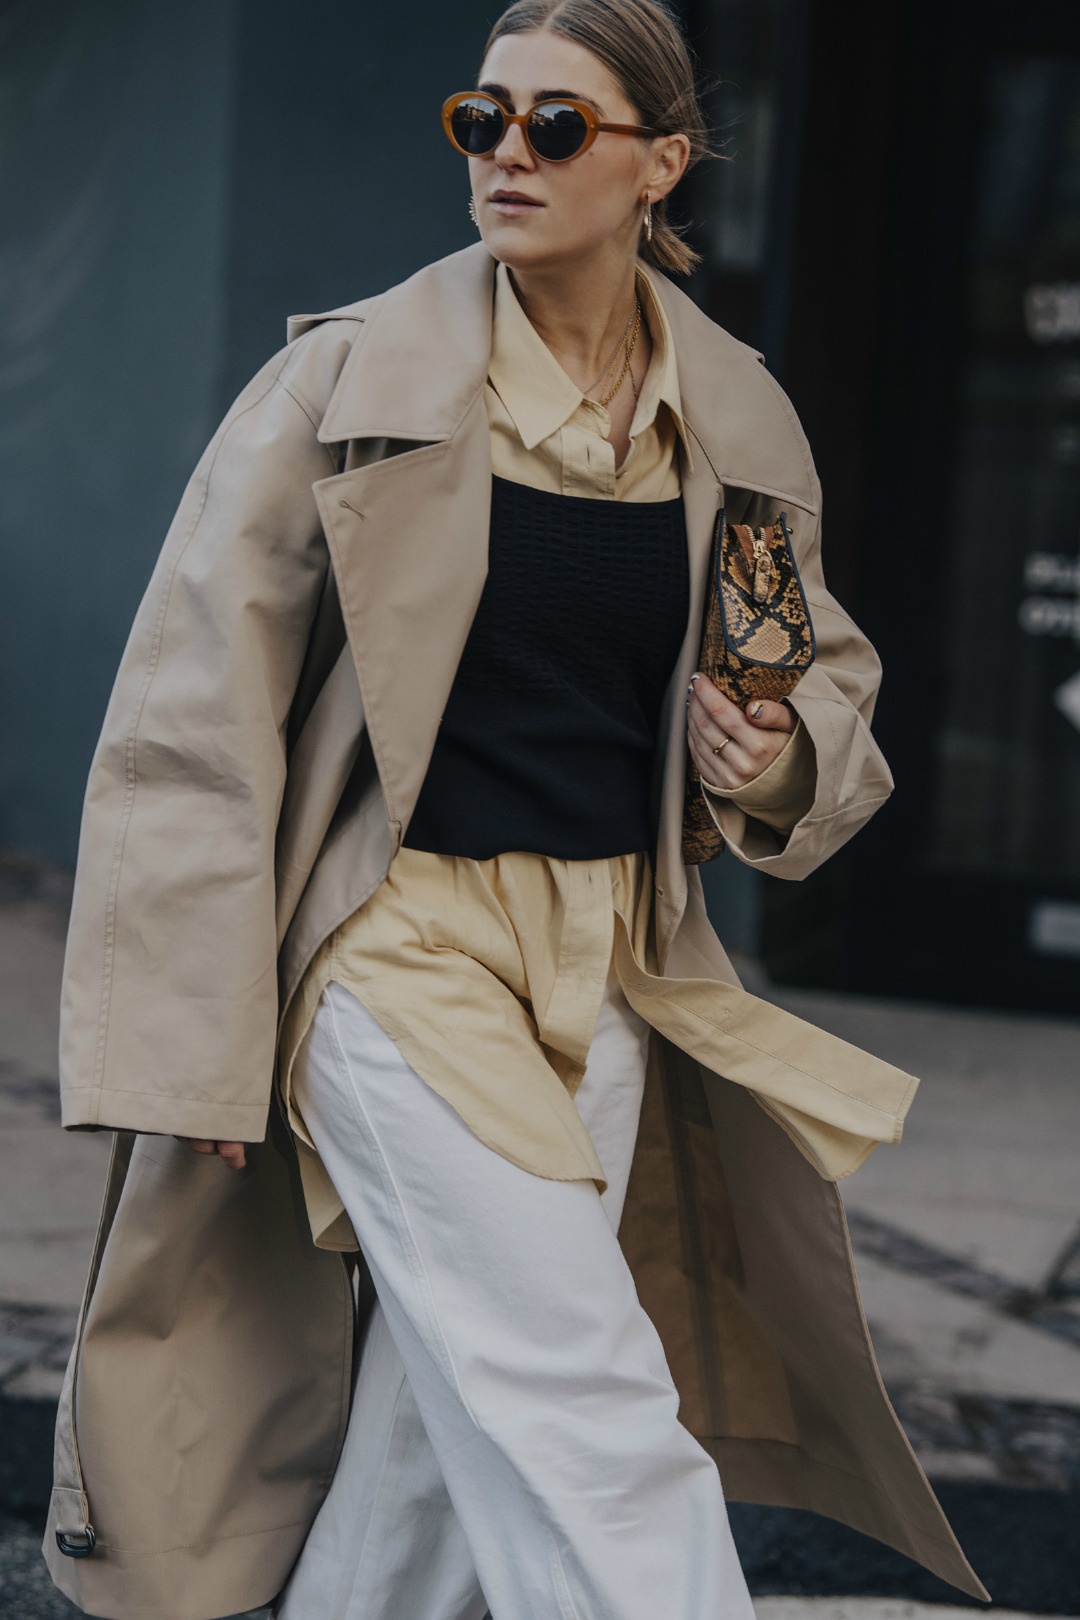 2019-20 Sonbahar/Kış Kopenhag Moda Haftası'nın En İyi Sokak Stilleri 1. Gün